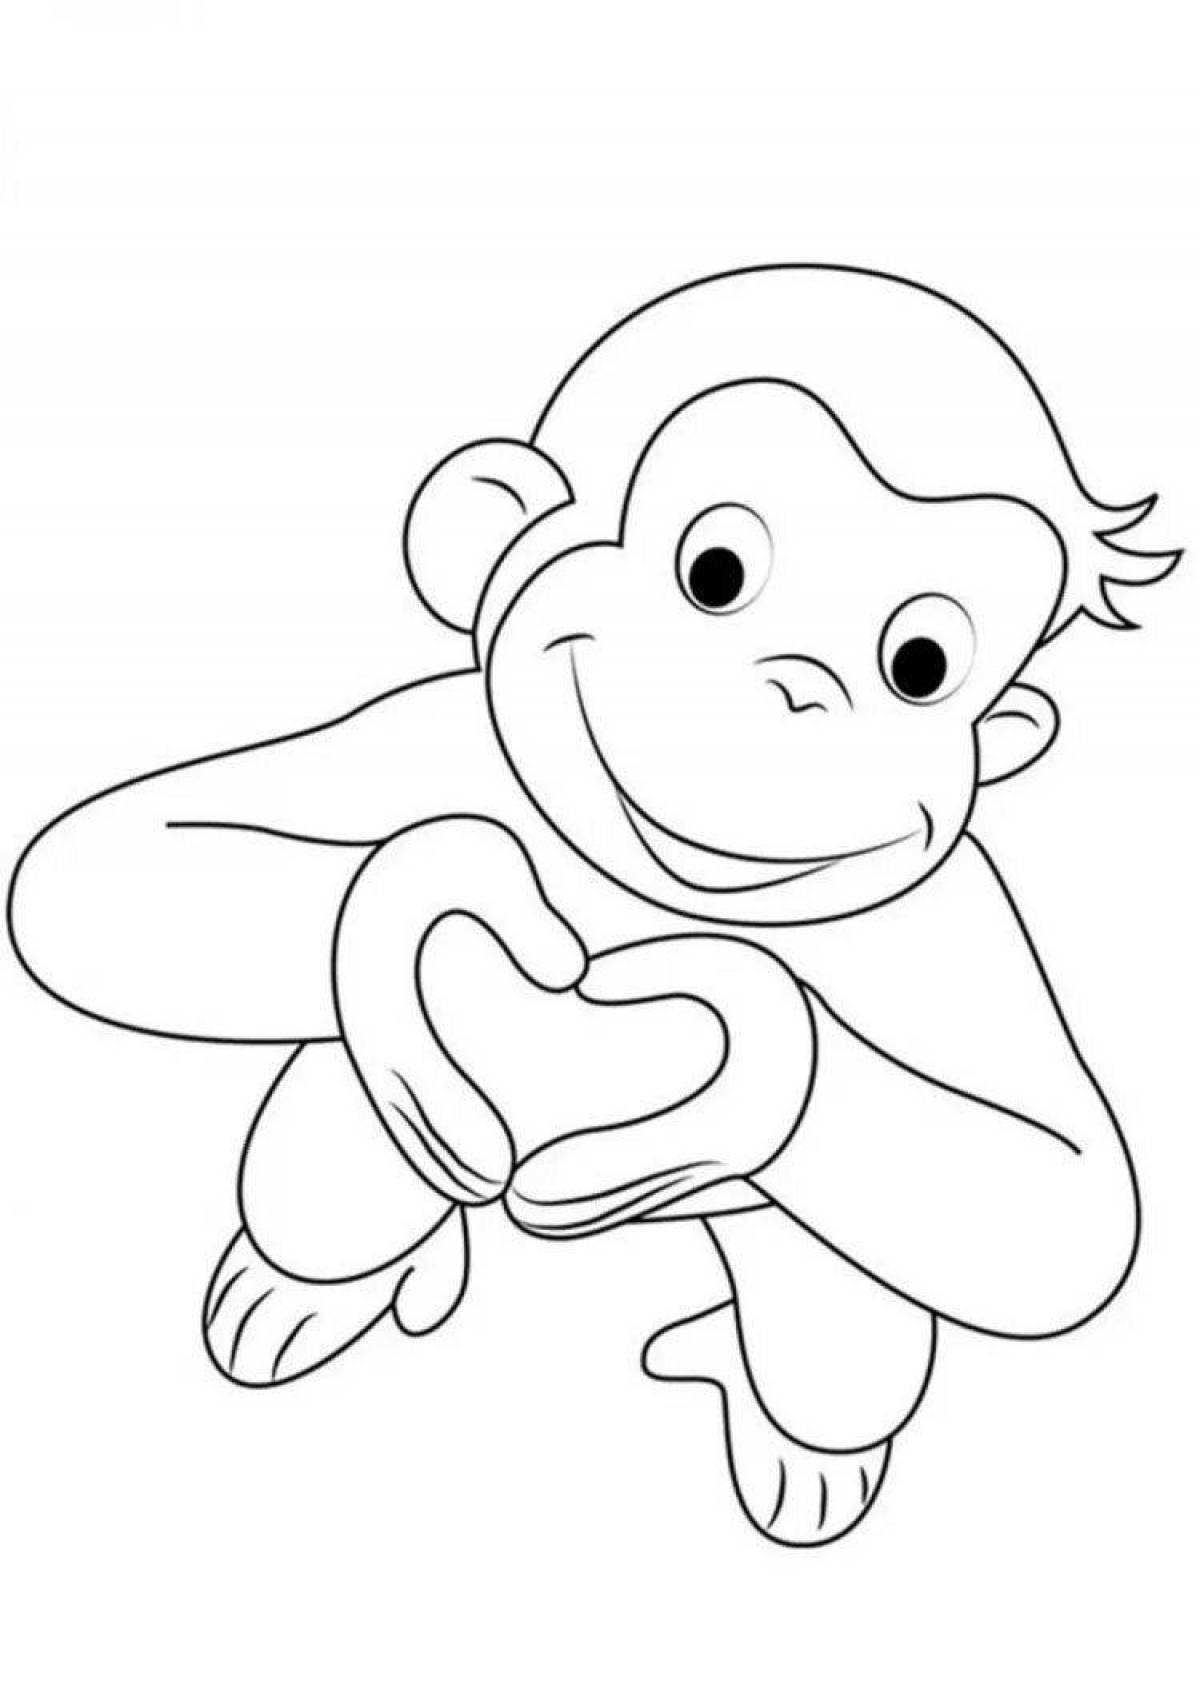 Игра Забавные Обезьяны: Раскраска / Funny Monkeys Coloring